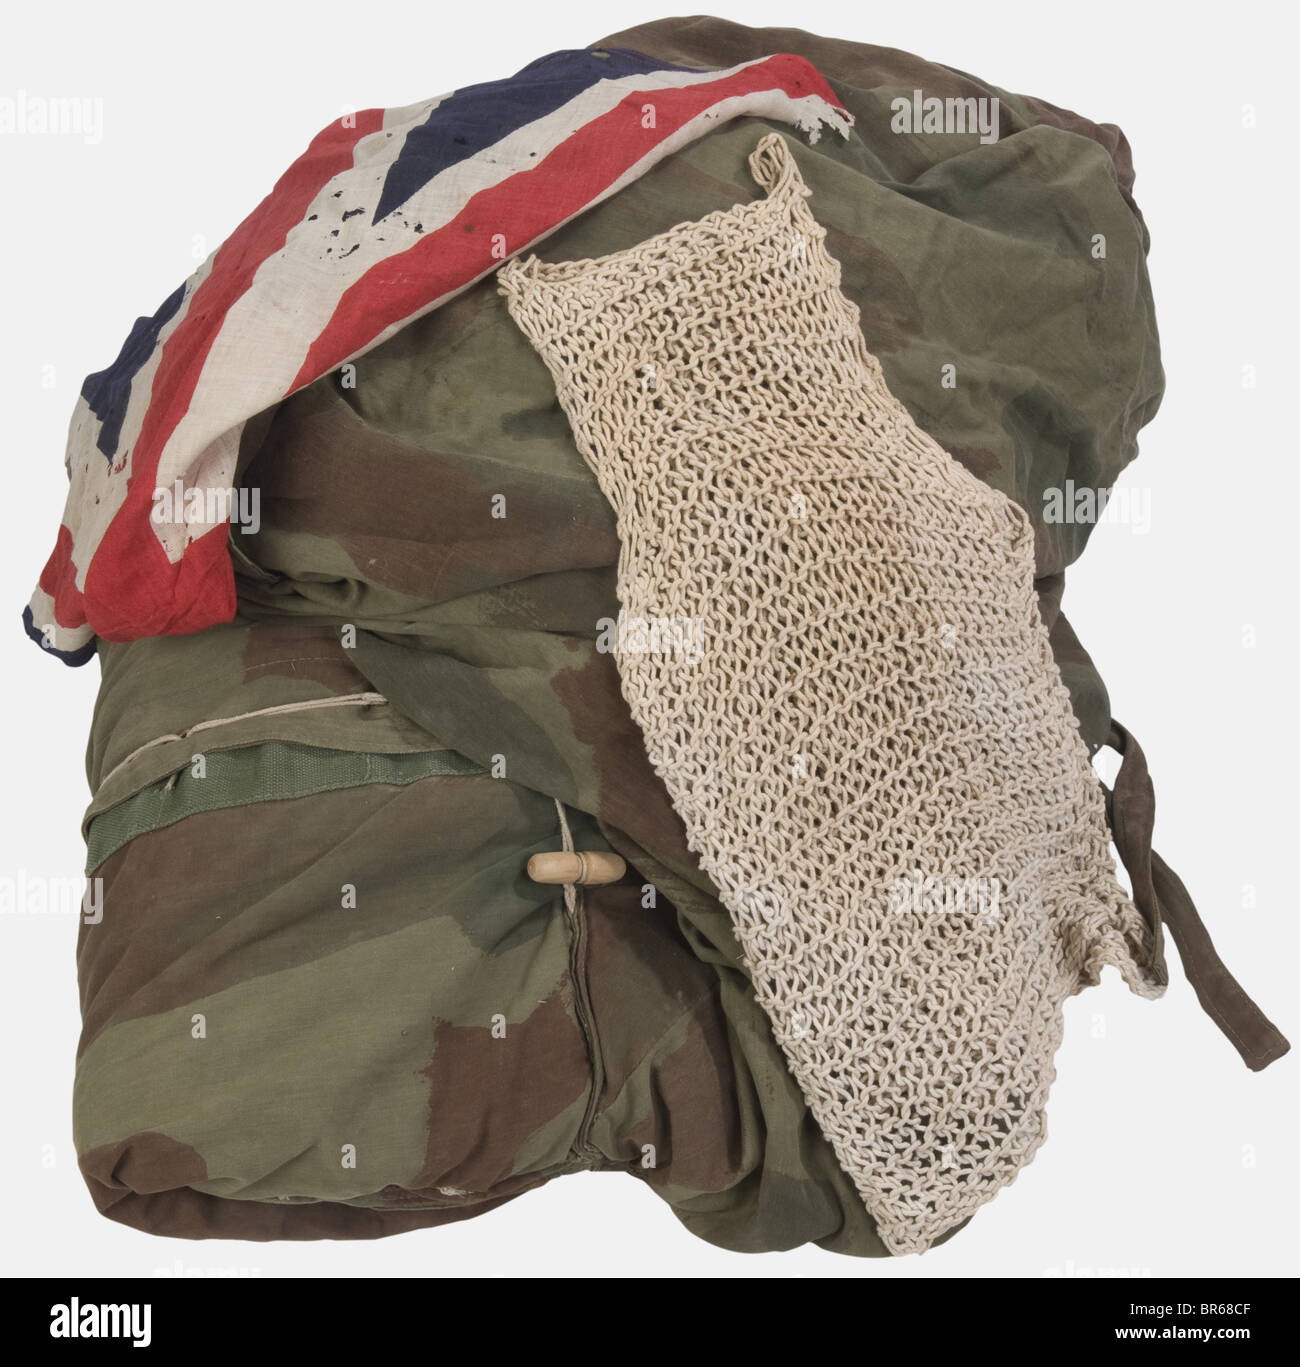 Grande-BRETAGNE, Equipements de paracadutiste anglais, comprenant un sac de couchage en toile camouflée complet avec ses sangles, un gilet d'évasion en maille, un drappeau anglais (assez mité), , Foto Stock